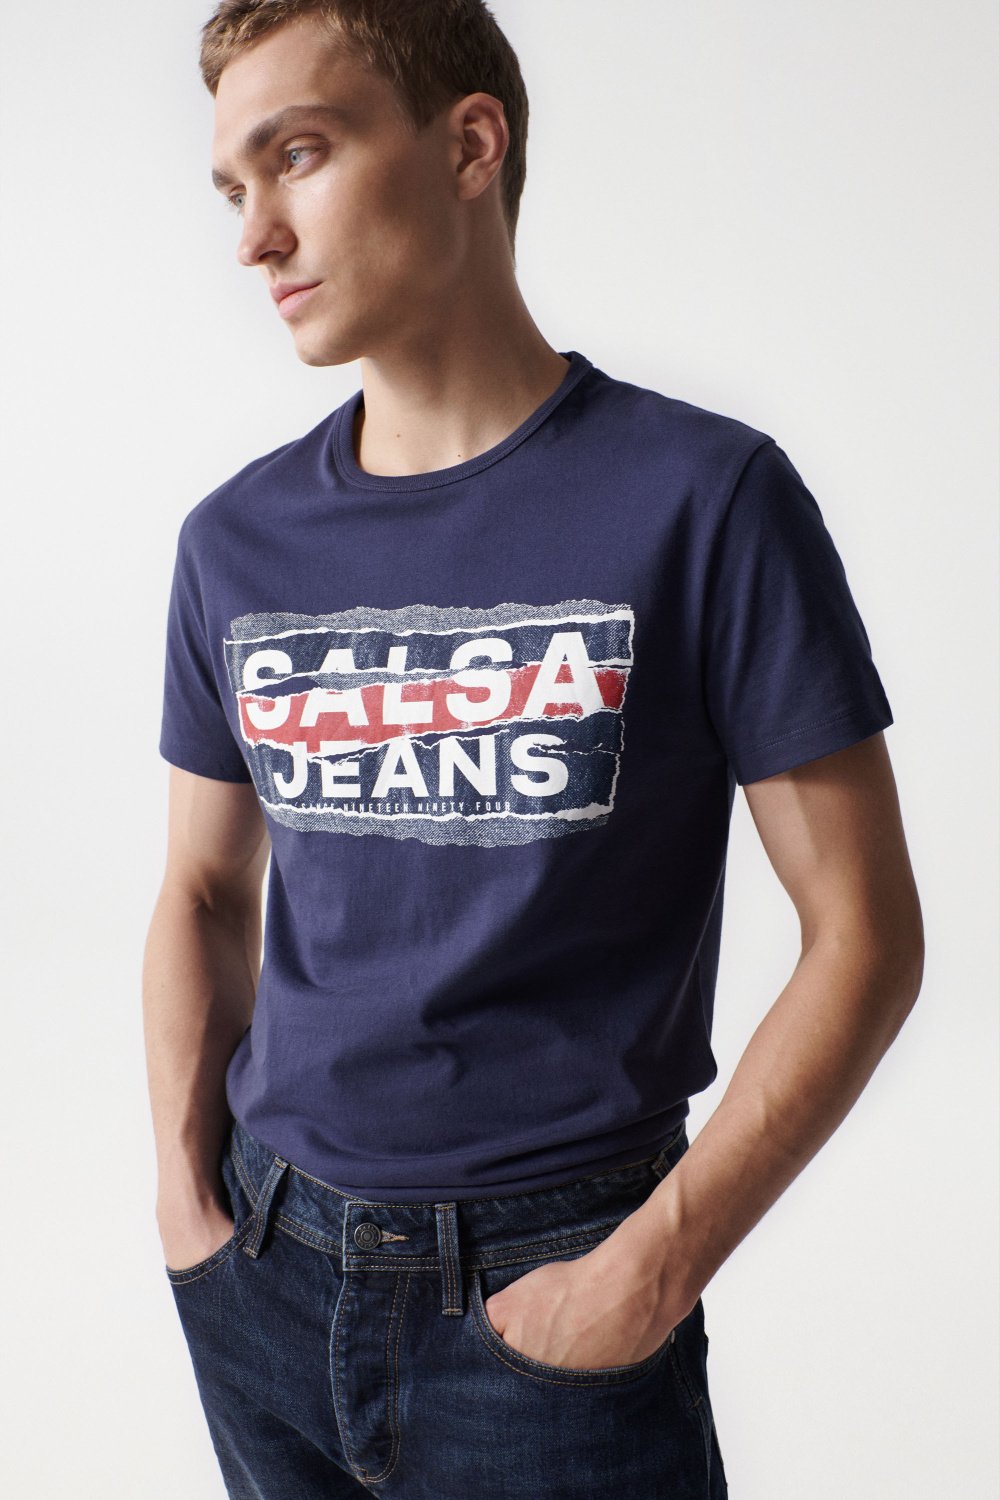 T-Shirt mit Markenaufdruck, verwischter Effekt - Salsa